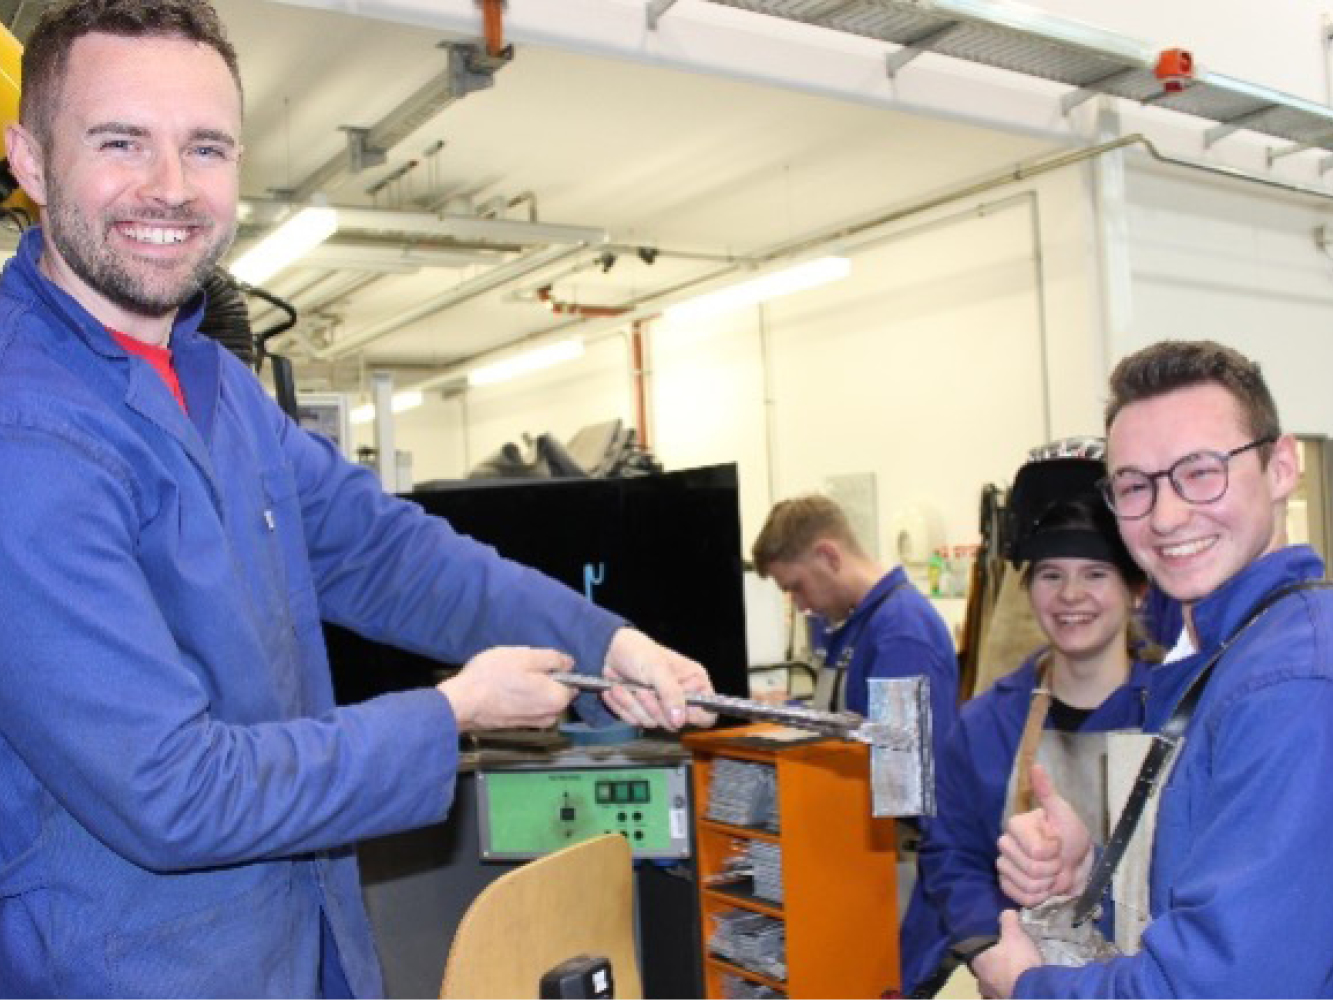 Männlicher Mitarbeiter und Studenten im blauen Kittel stehen vor einem Schweißstand im Labor und blicken lachend in die Kamera